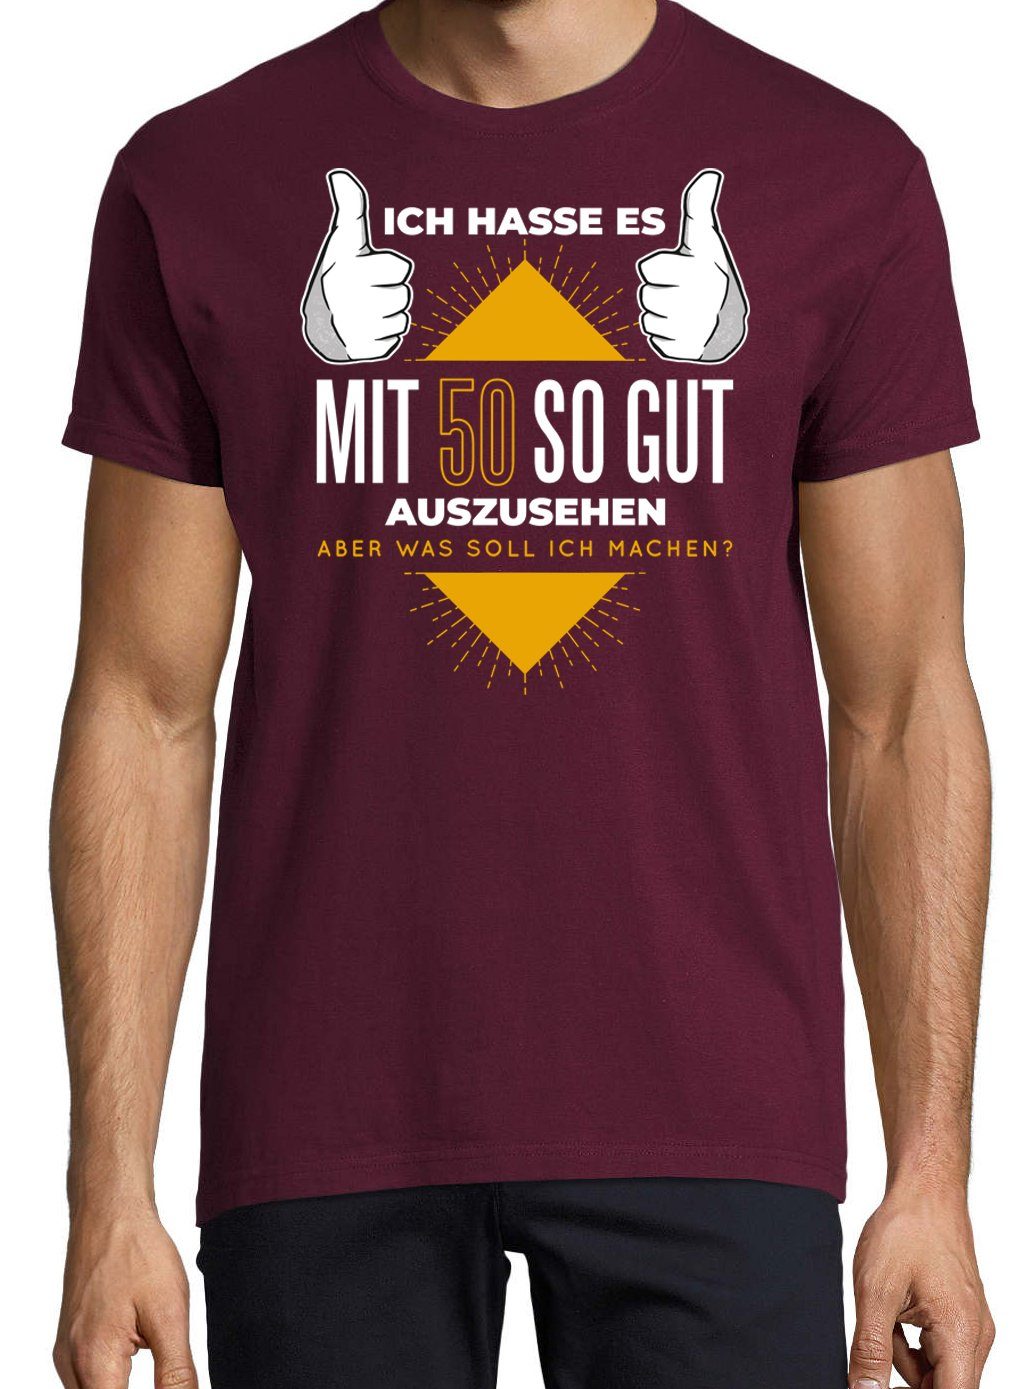 Gutaussehend mit Herren Burgund Frontprint Shirt lustigem Designz Spruch und T-Shirt 50 Youth